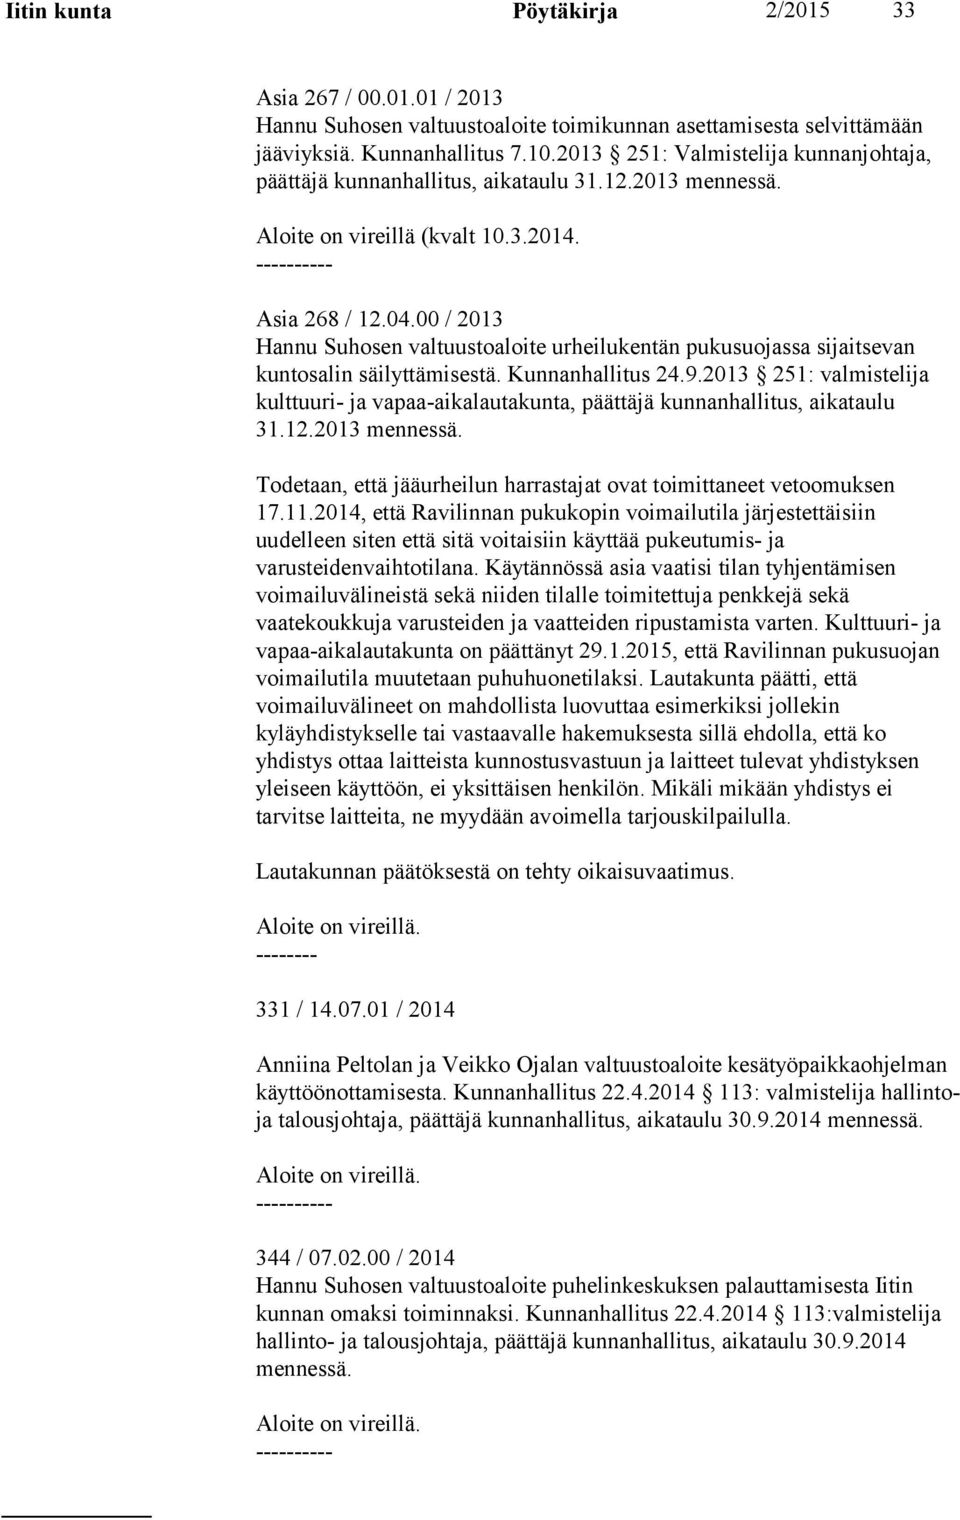 00 / 2013 Hannu Suhosen valtuustoaloite urheilukentän pukusuojassa sijaitsevan kuntosalin säilyttämisestä. Kunnanhallitus 24.9.